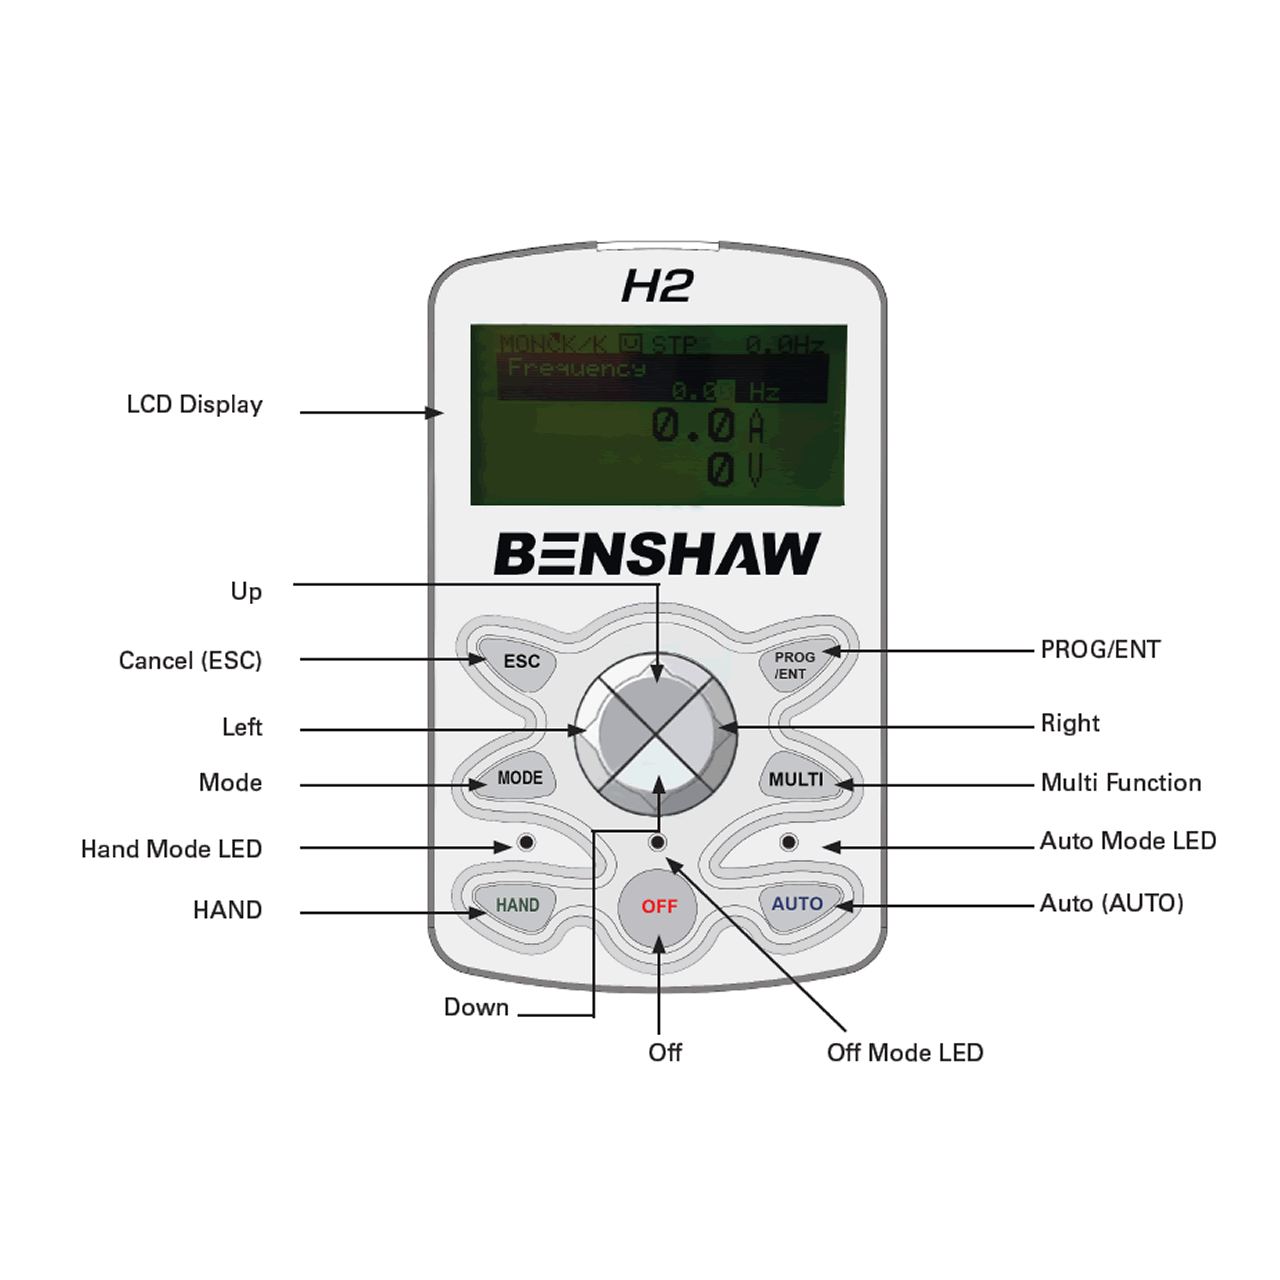 Benshaw RSI-300-H2-4C keypad